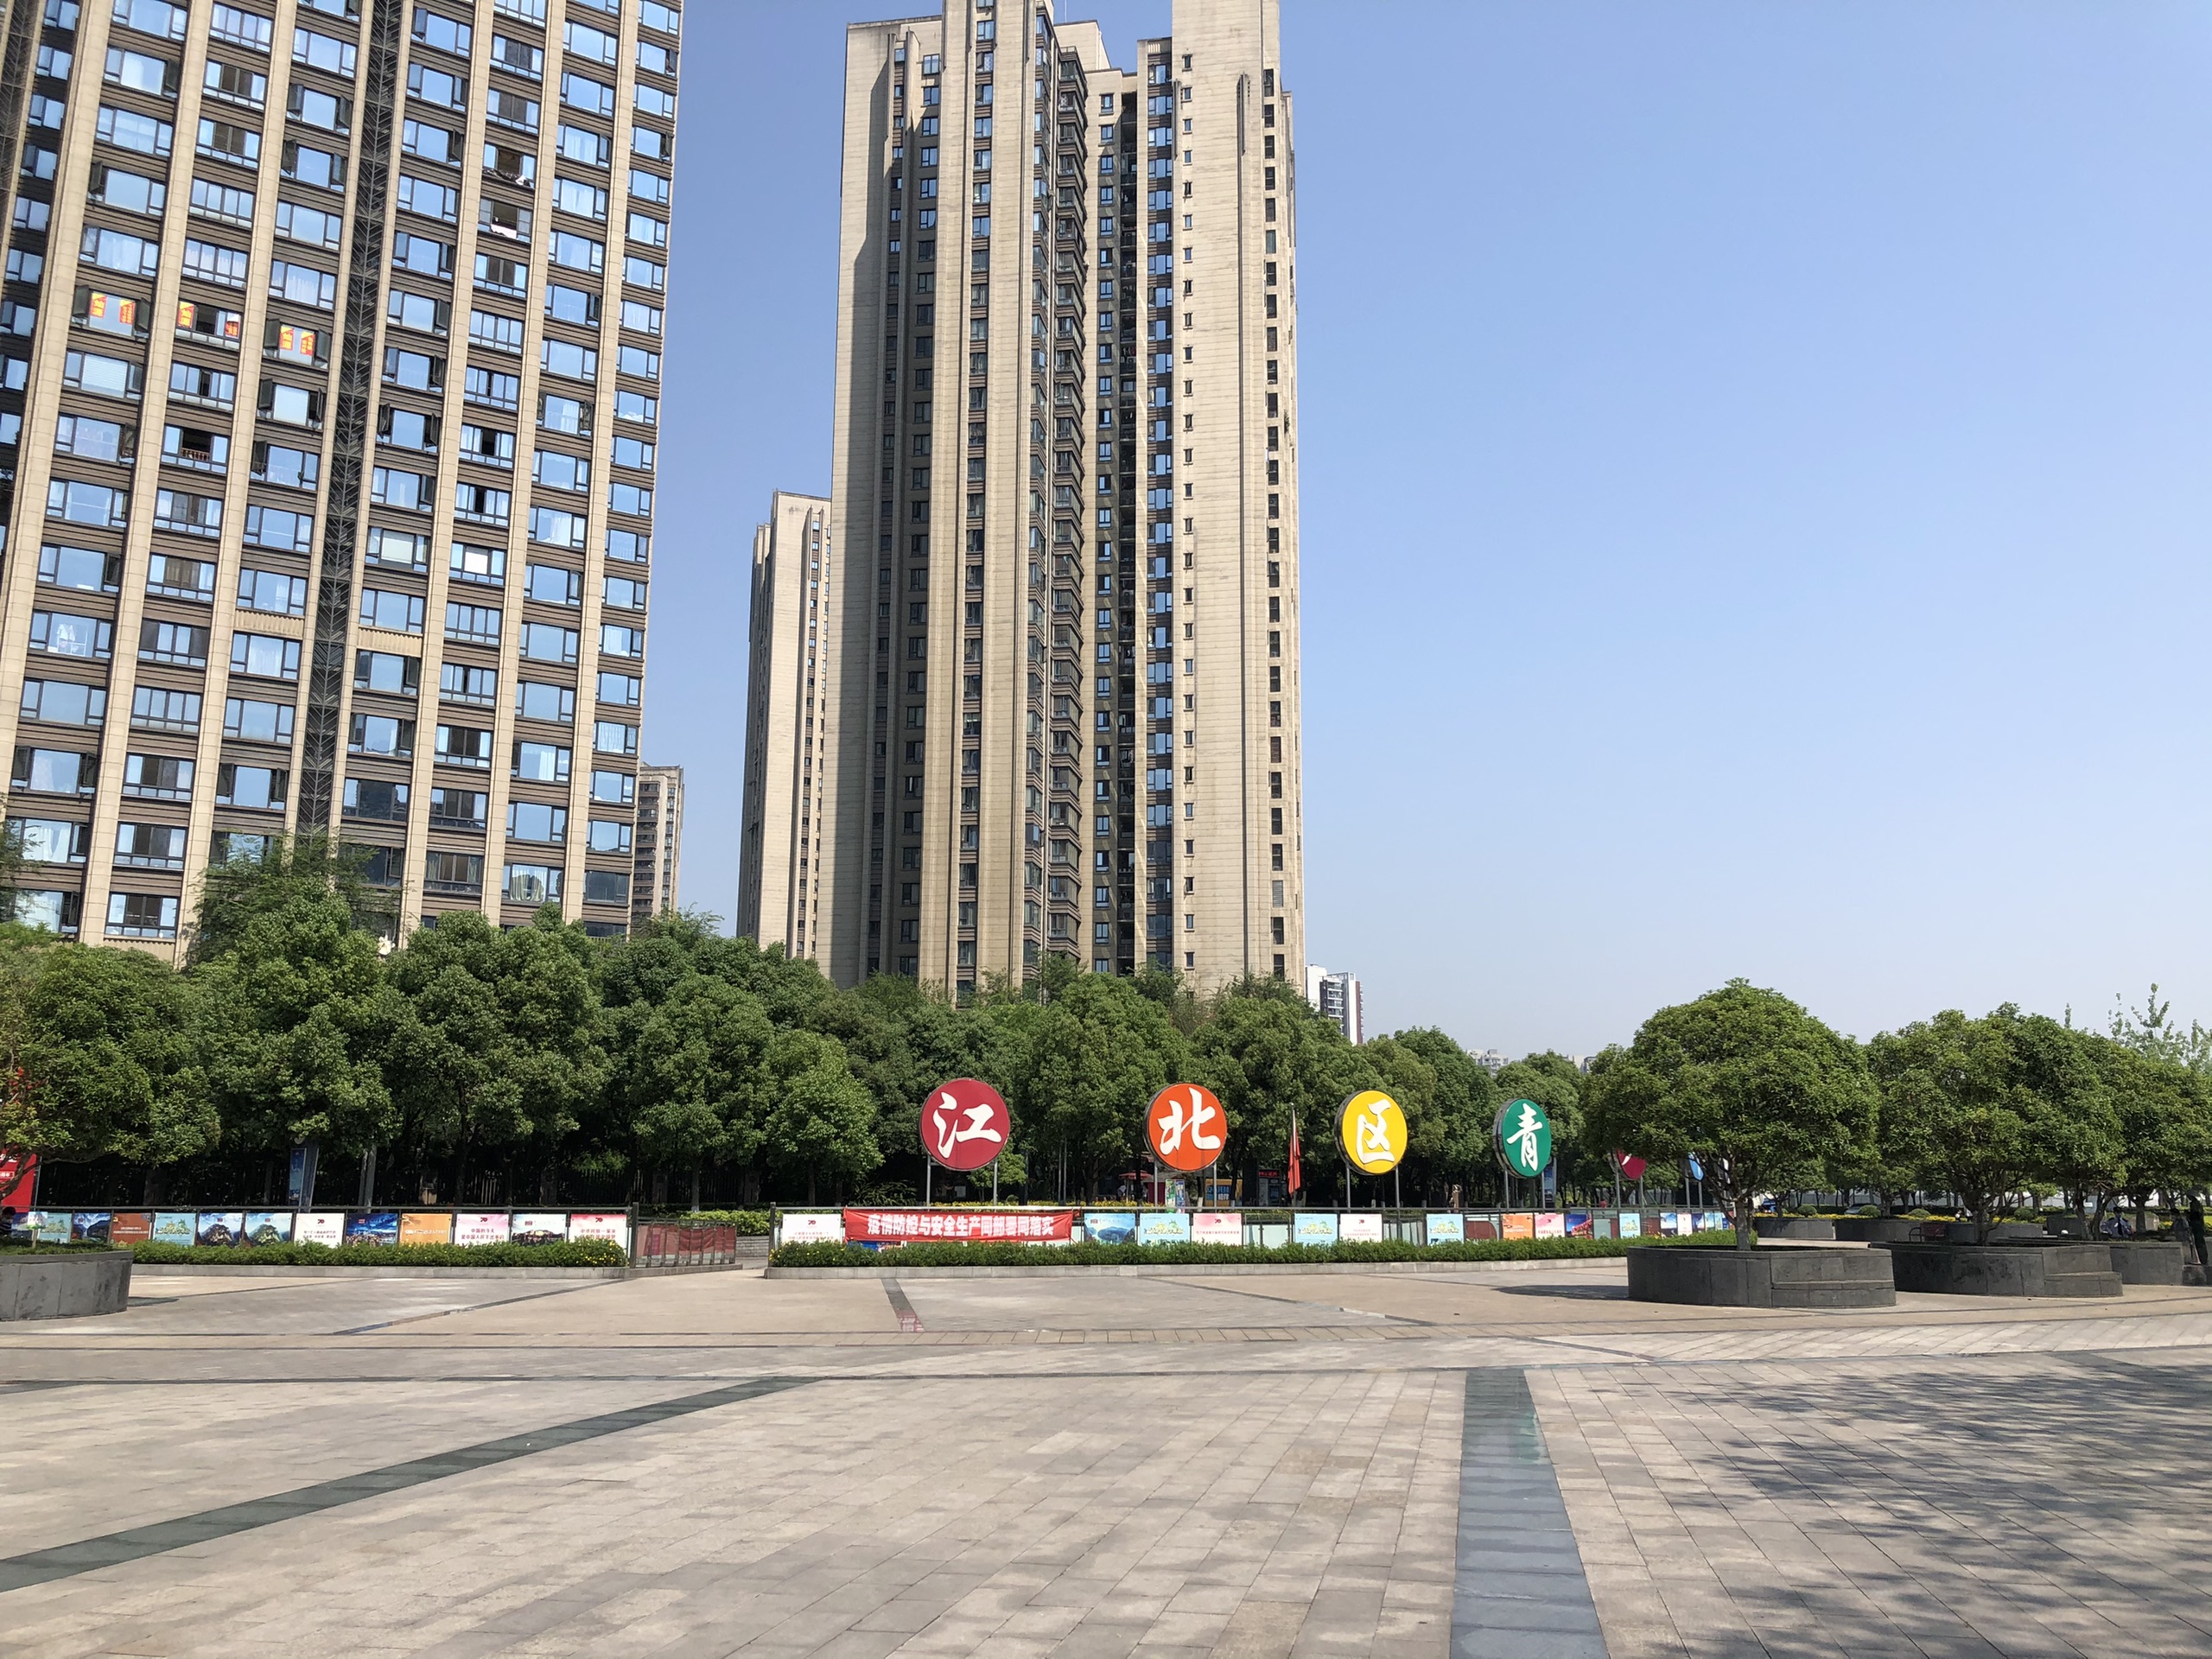 石子山运动公园社区周边的小公园，以运动为主题-重庆江北石子山体育公园